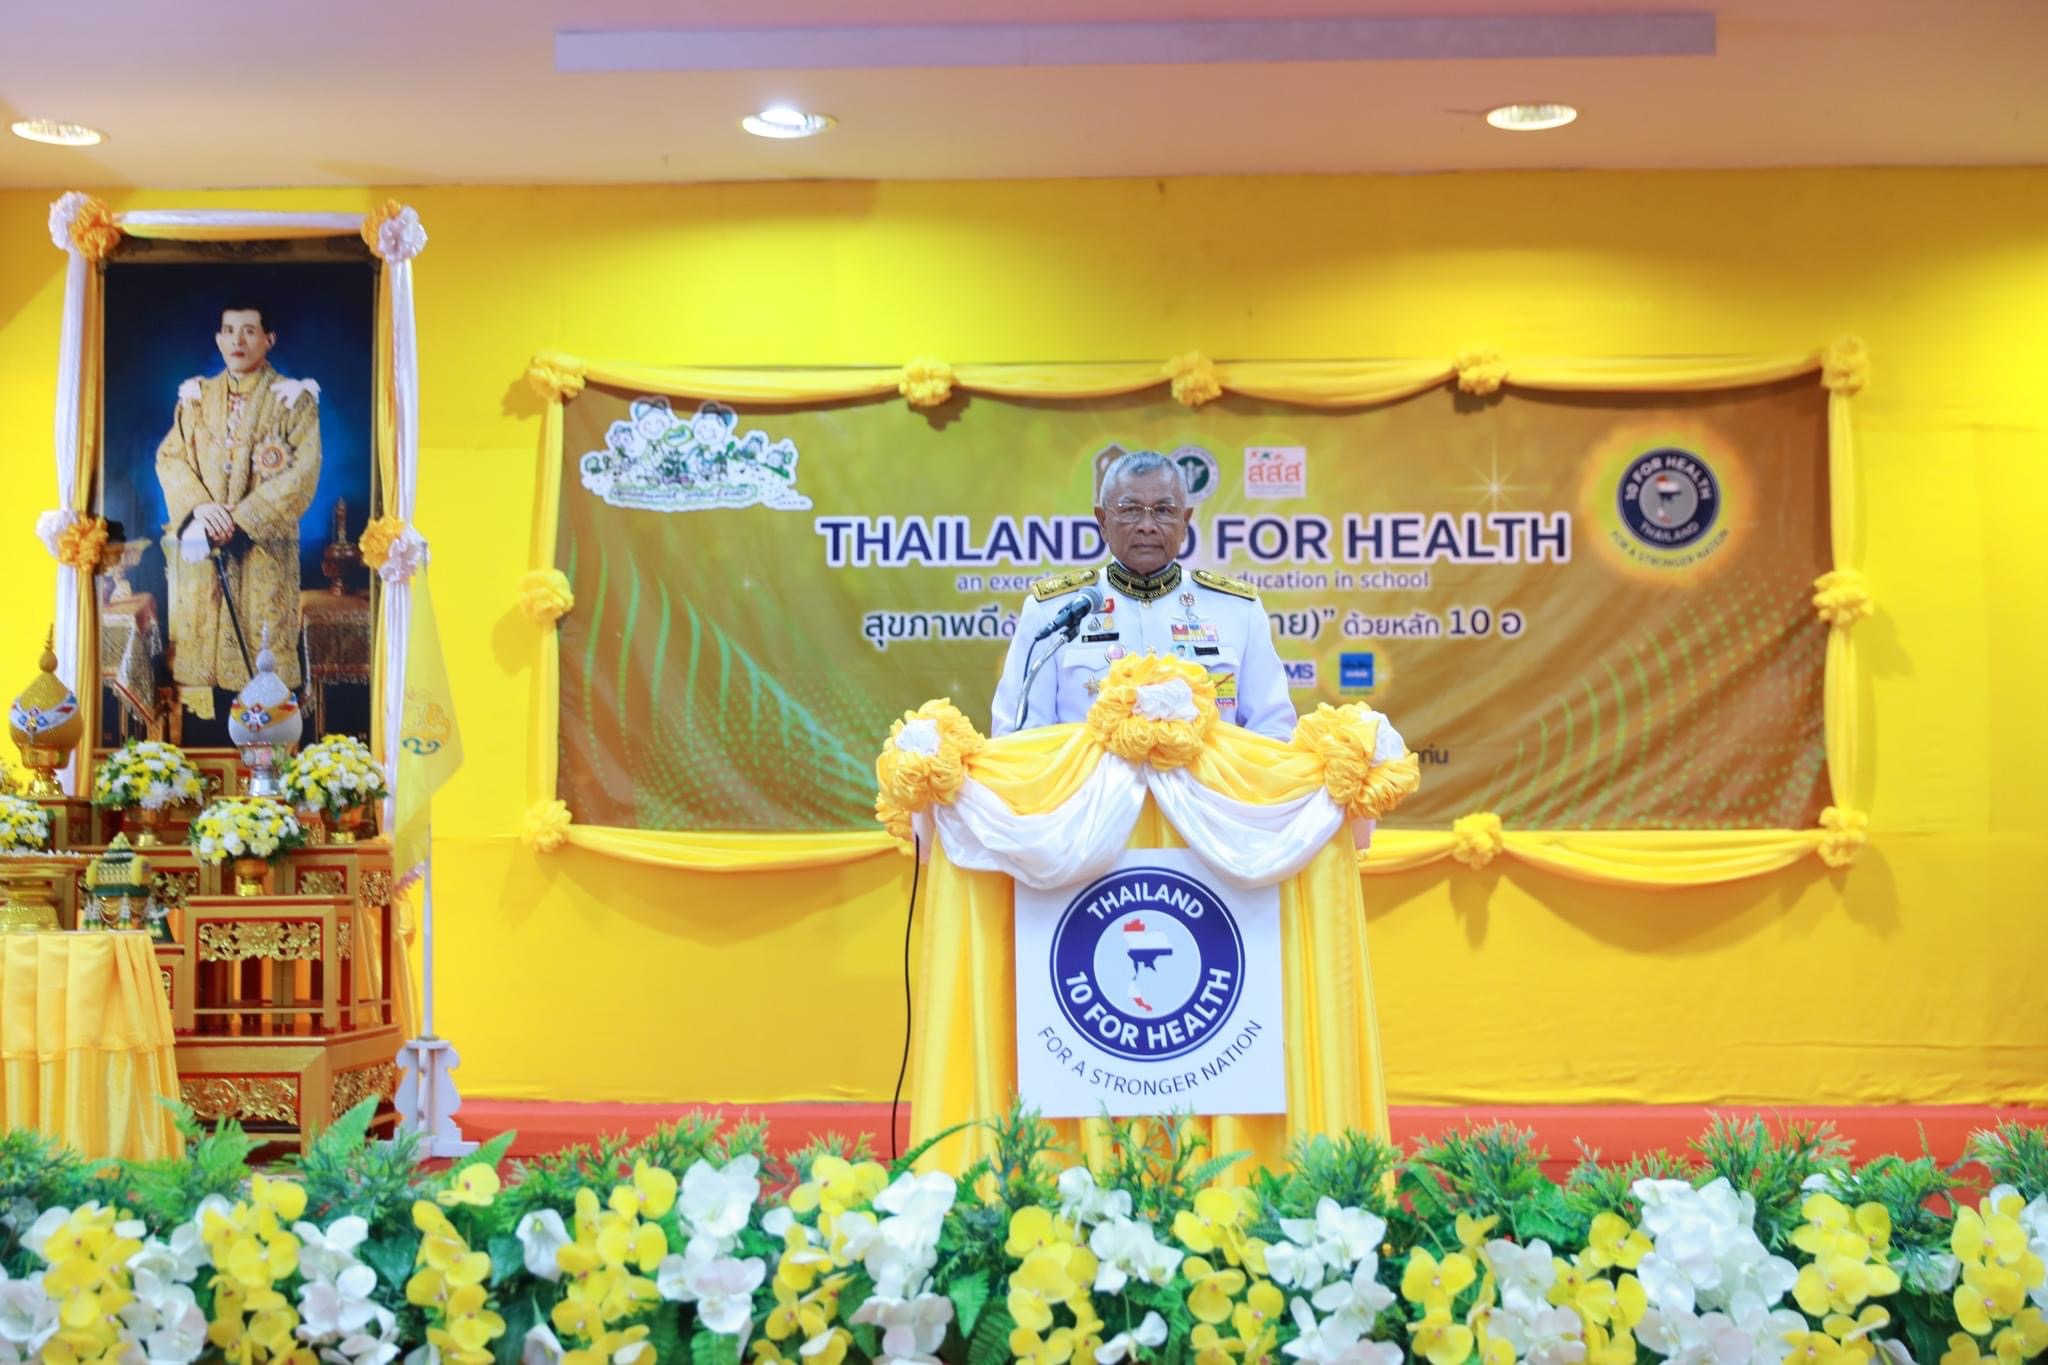 กรมวังผู้ใหญ่ในพระองค์ 904 ติดตามความก้าวหน้าการดำเนินงานโครงการสุขภาพดีด้วยทฤษฎีเพื่อน (ตาย) ด้วยหลัก 10 อ (Thailand 10 for Health) ปี 2566 ที่จังหวัดขอนแก่น